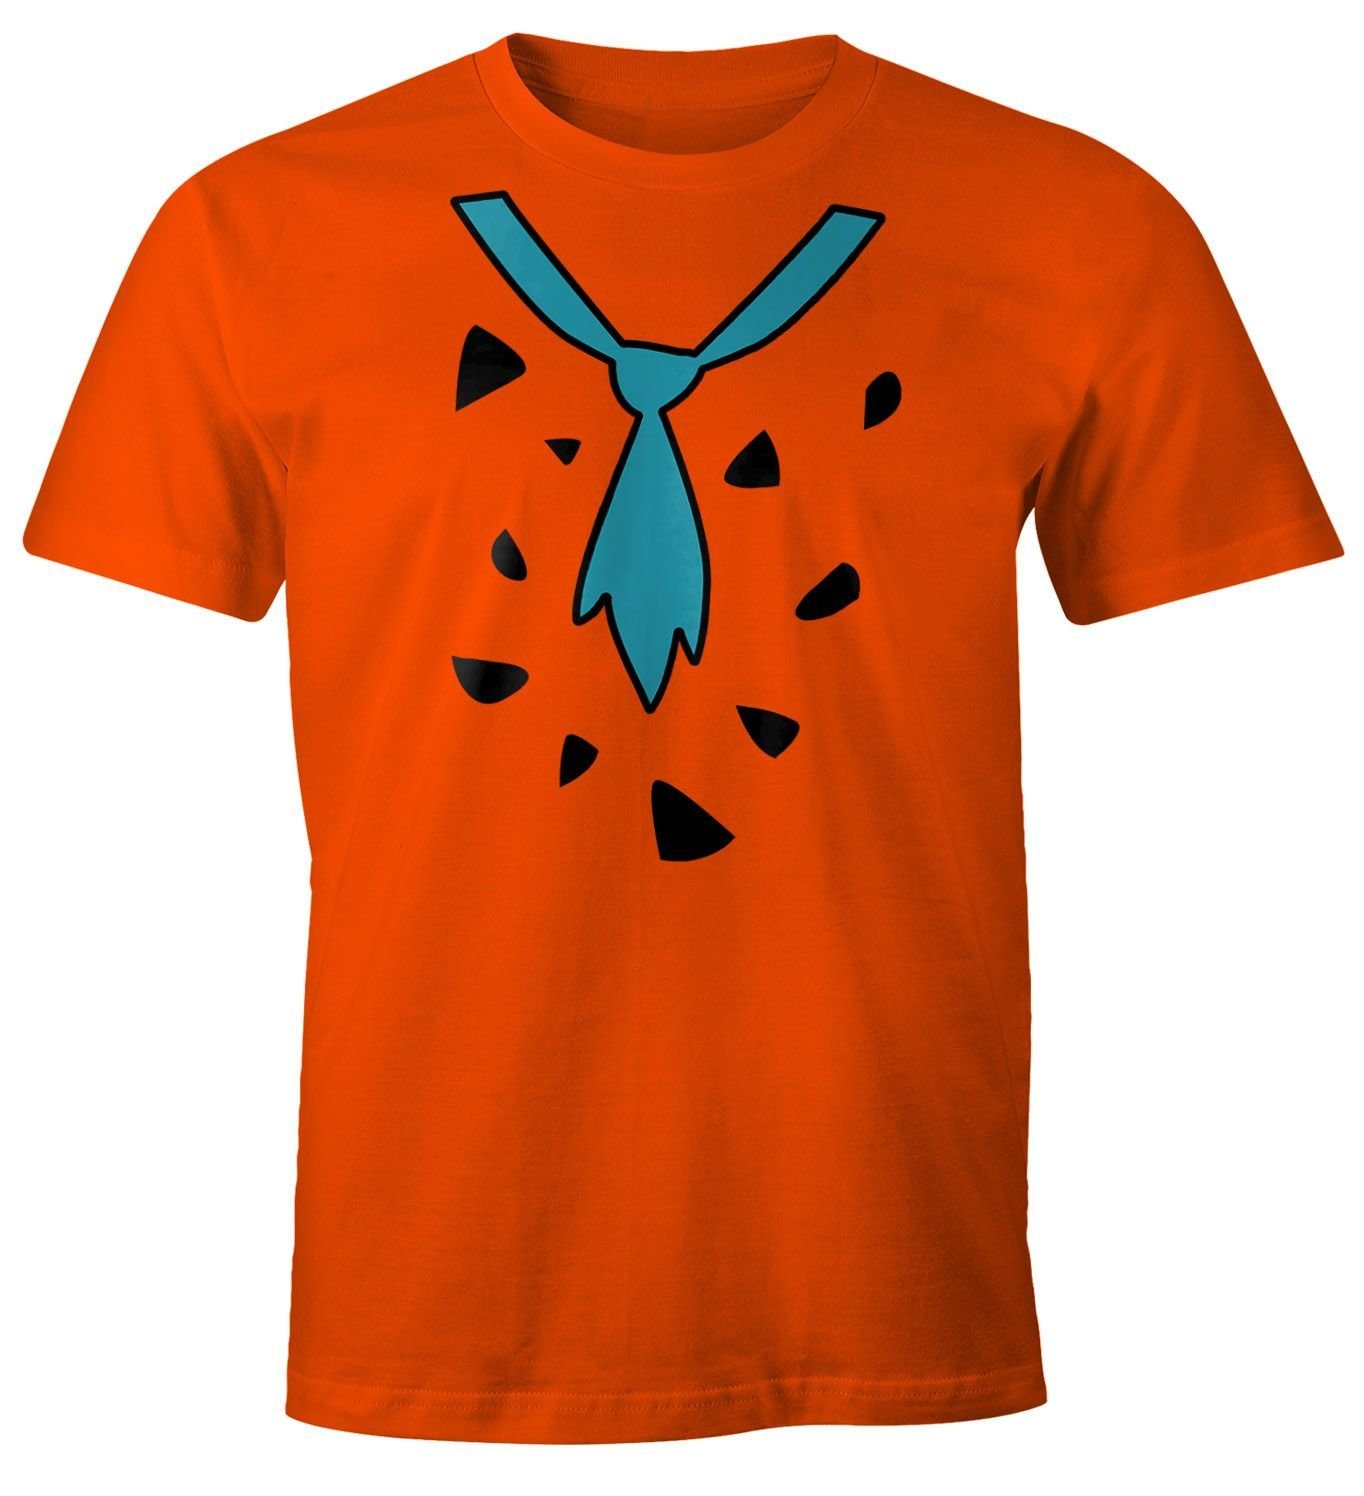 MoonWorks Print-Shirt Herren T-Shirt Fasching Fred Feuerstein Faschings-Shirt Karneval Moonworks® mit Print